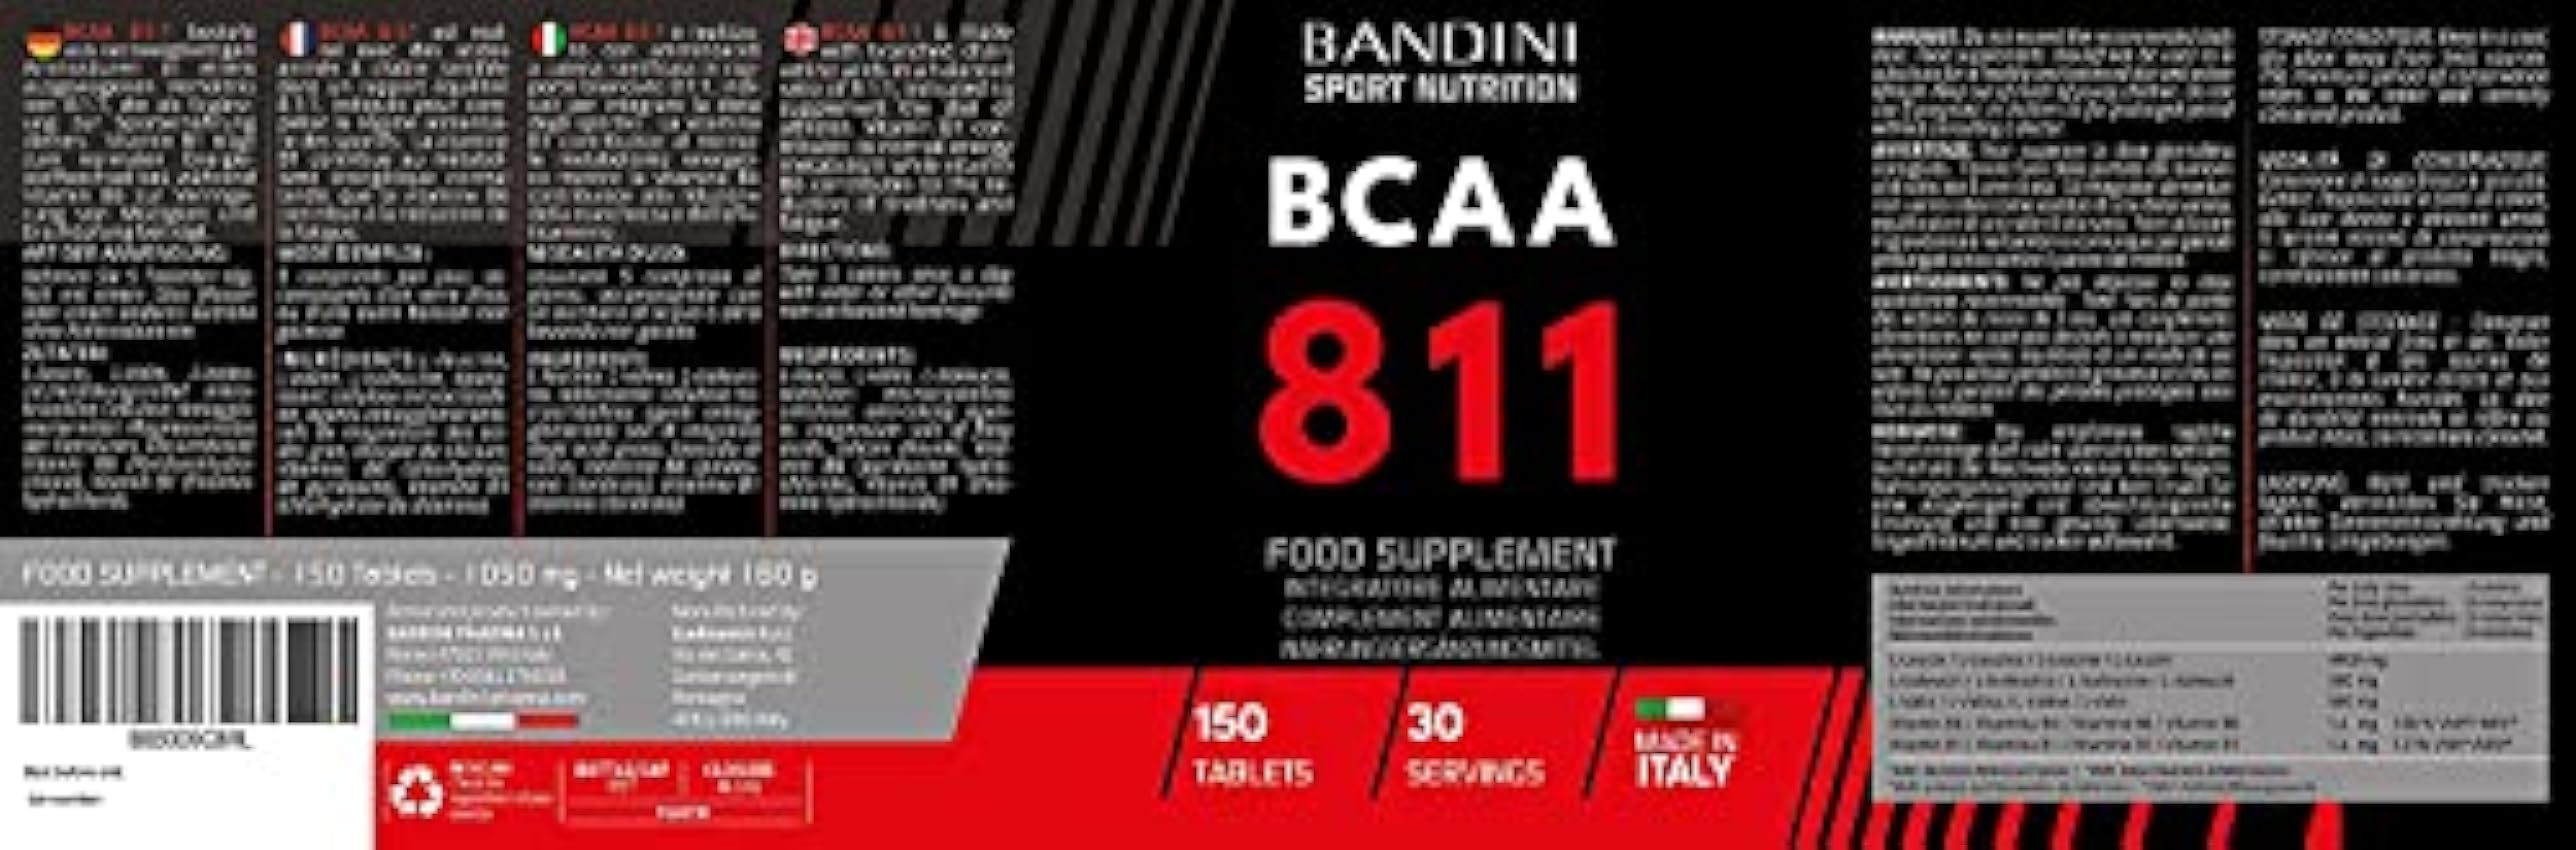 Bandini® BCAA 8.1.1 Comprimés | Acides Aminés à Chaîne Ramifiée, Leucine, Isoleucine, Valine + Vitamine B1 et B6 | Supplément Pré et Post Workout | Acide Amines 8:1:1 150 comprimés | 100% Vegan vCMrqSF1